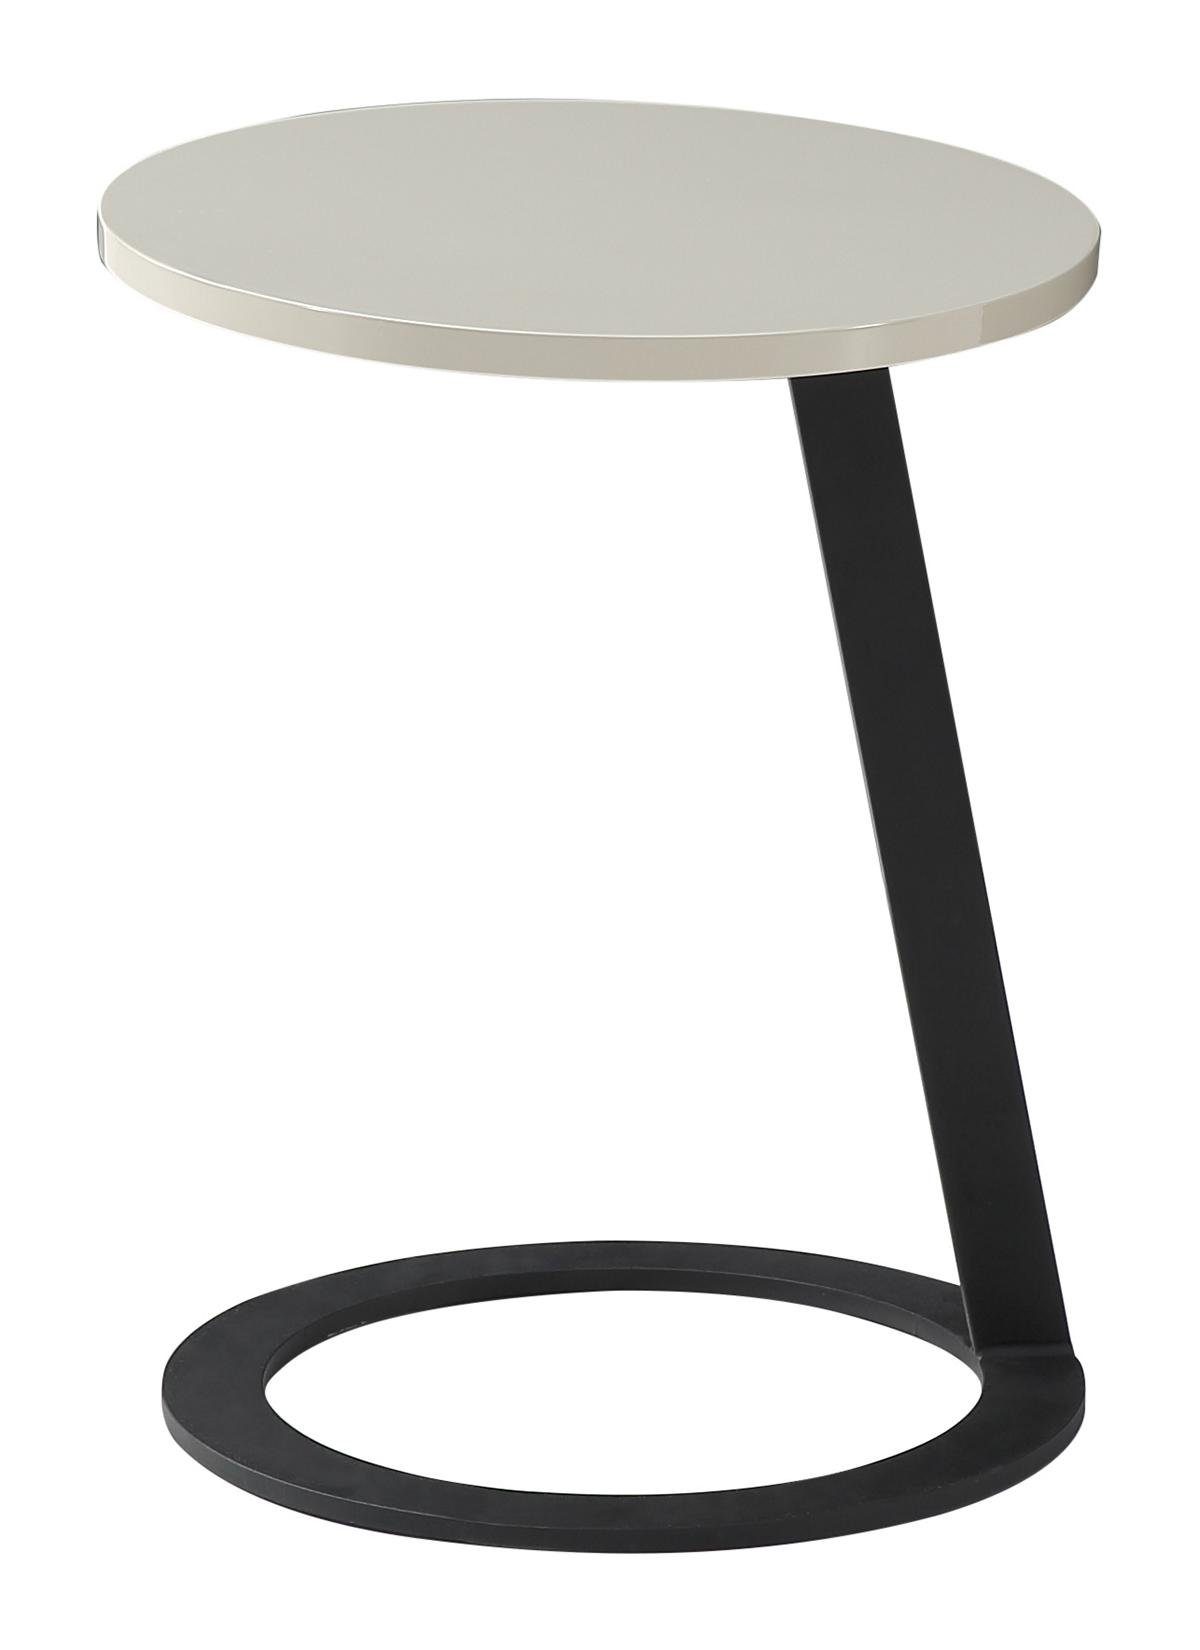 Jafra Couchtisch, Beistelltisch Tisch Couchtisch Tische Rund Design Runde Sofa Wohnzimmer Tisch